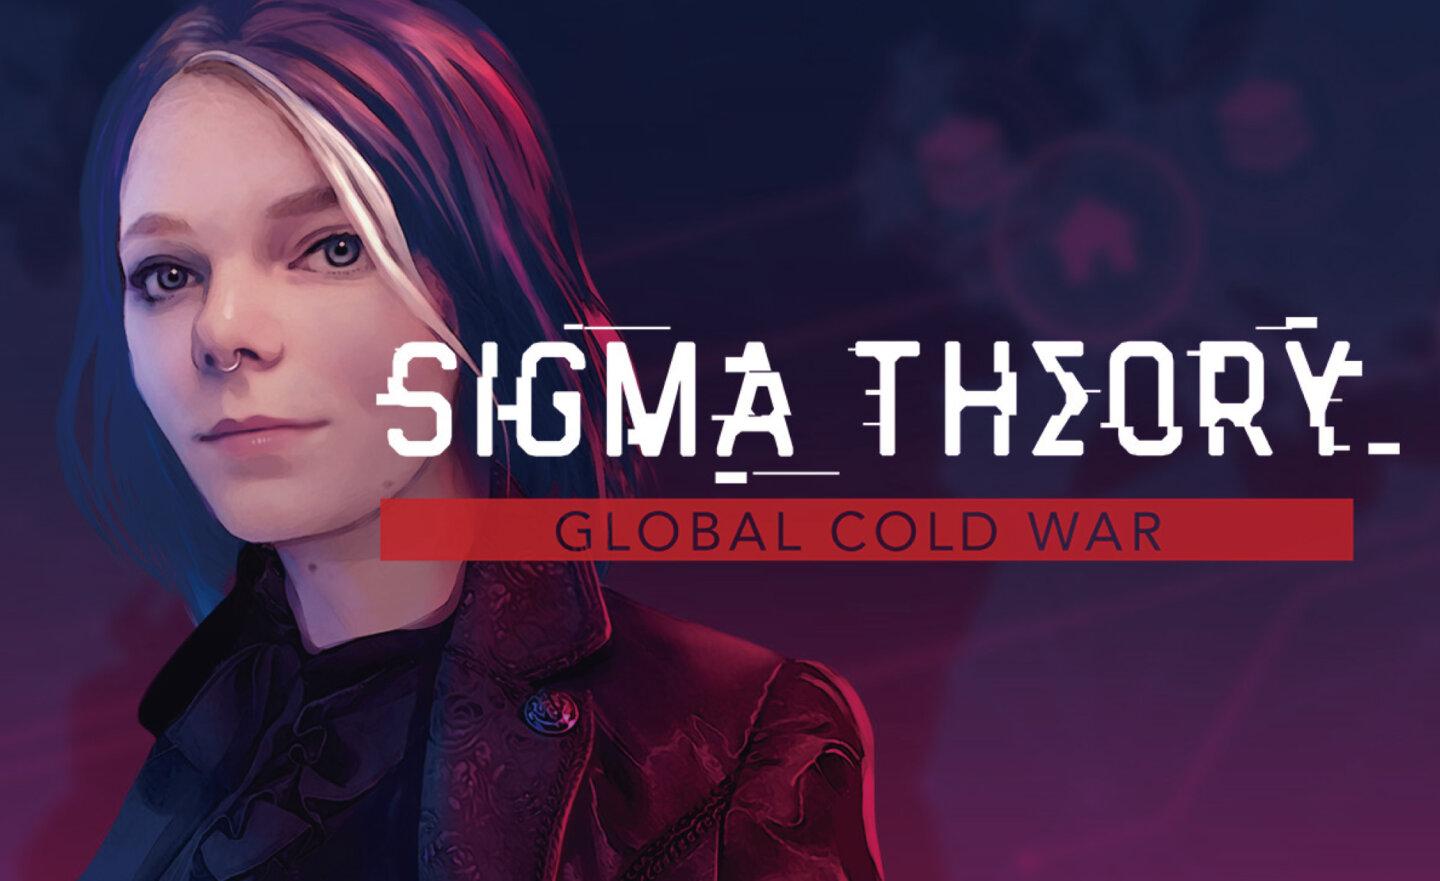 【限時免費】GOG 平台放送策略遊戲《Sigma Theory: Global Cold War》，領取時間至 6 月 19 日晚上 9:00 截止